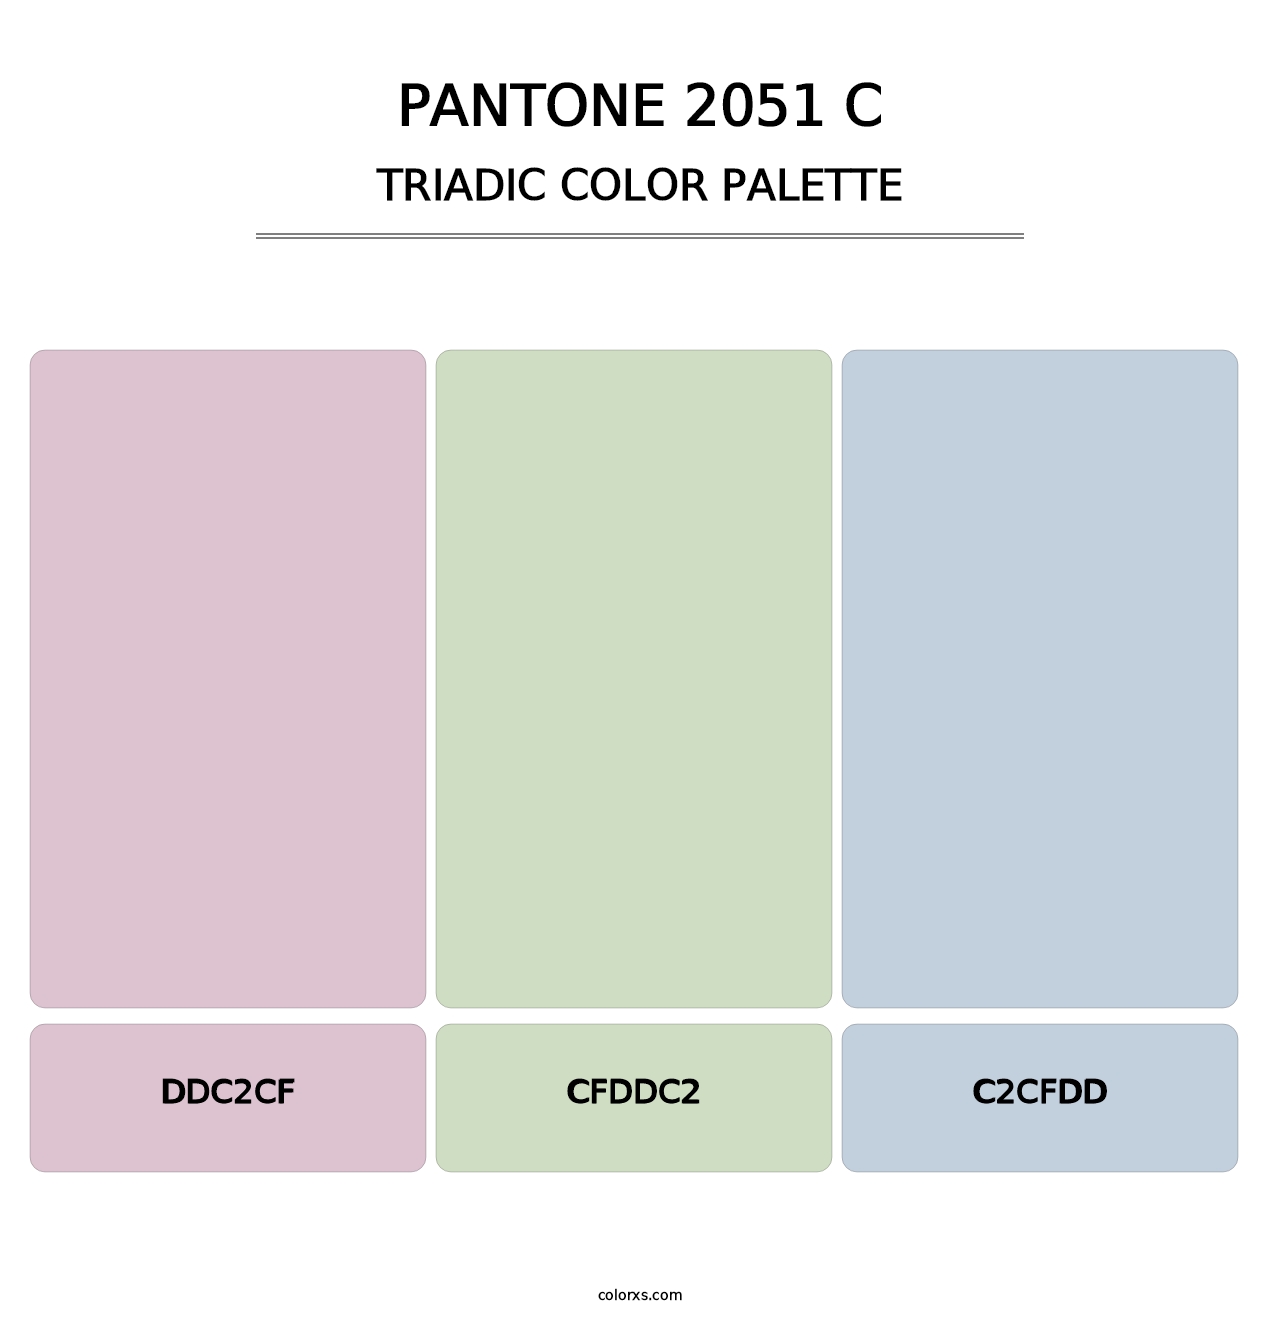 PANTONE 2051 C - Triadic Color Palette